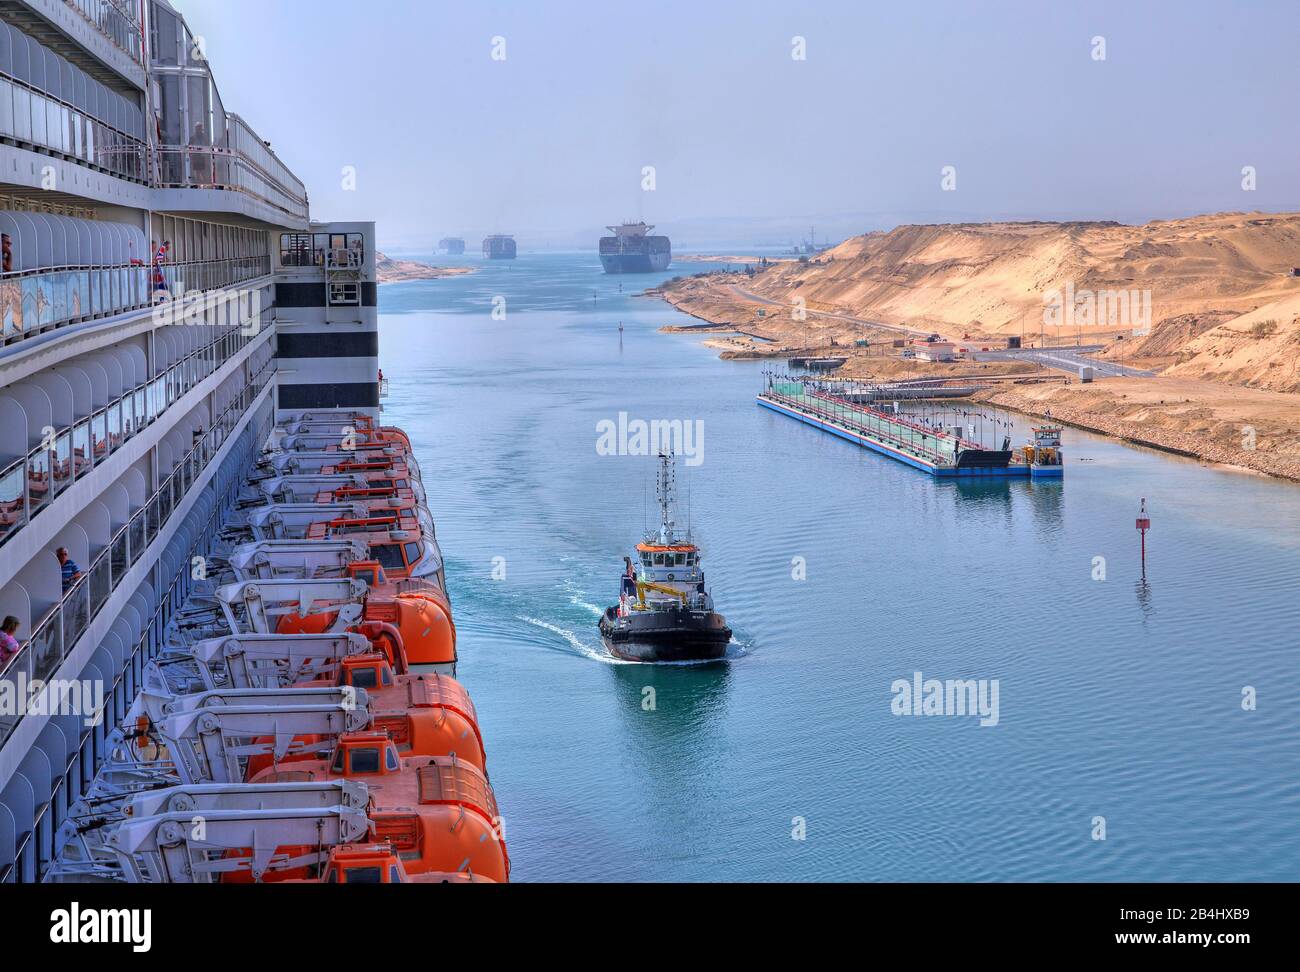 Seitenansicht mit Bootsdeck und Balkons des transatlantischen Linienschiffs Queen Mary 2 mit Schiffskonvoi im Suez-Kanal (Suez-Kanal), Ägypten Stockfoto